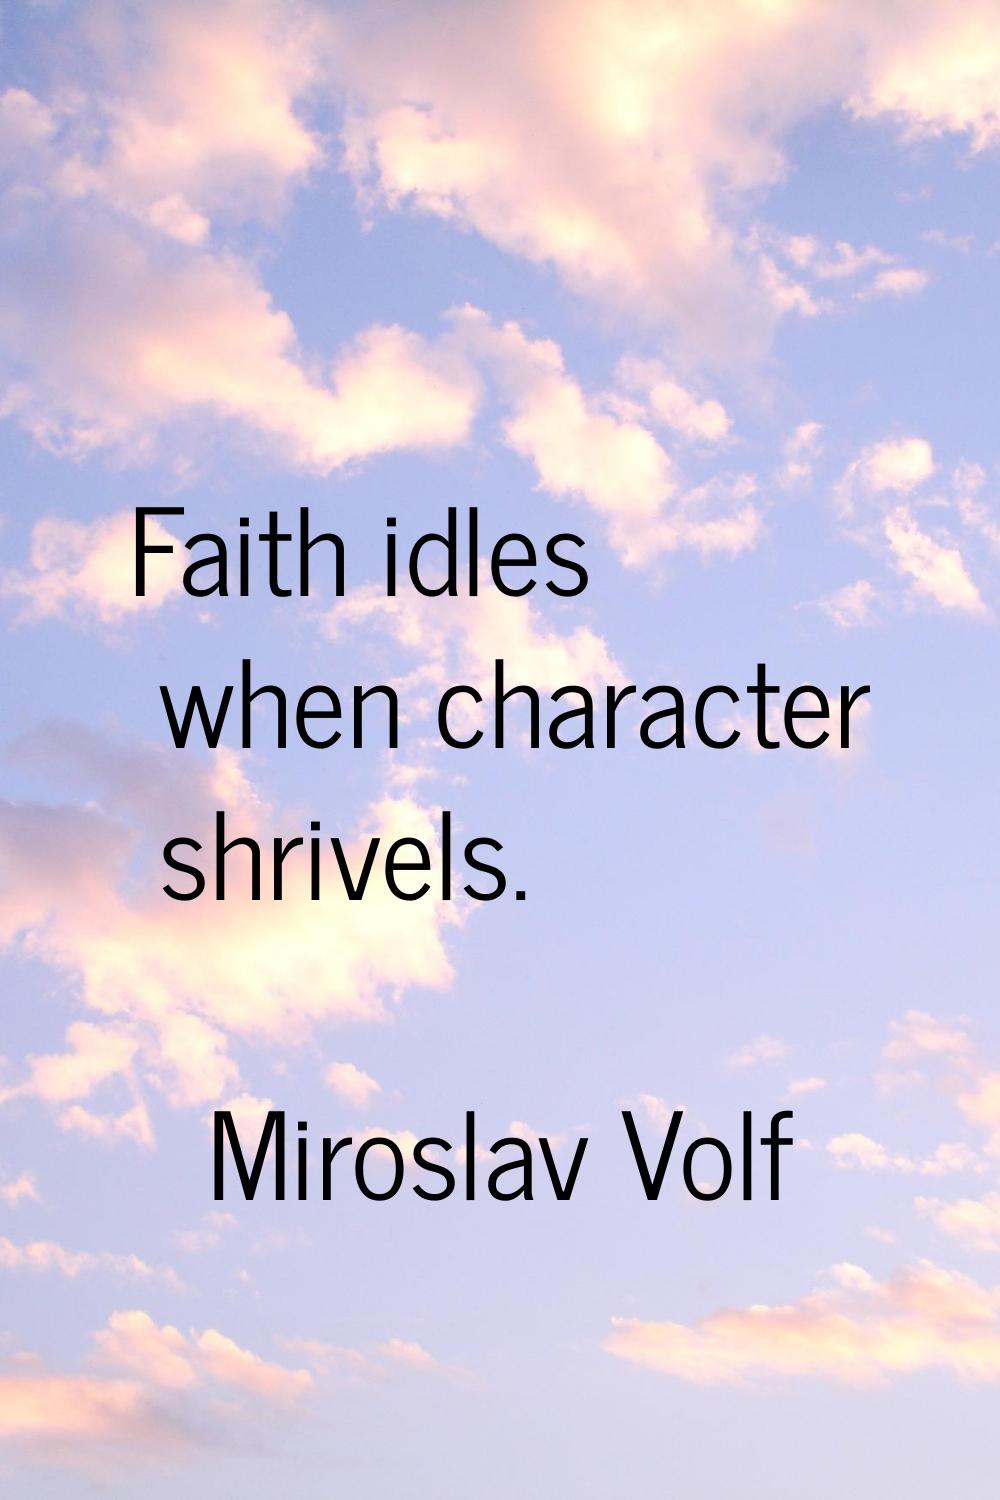 Faith idles when character shrivels.